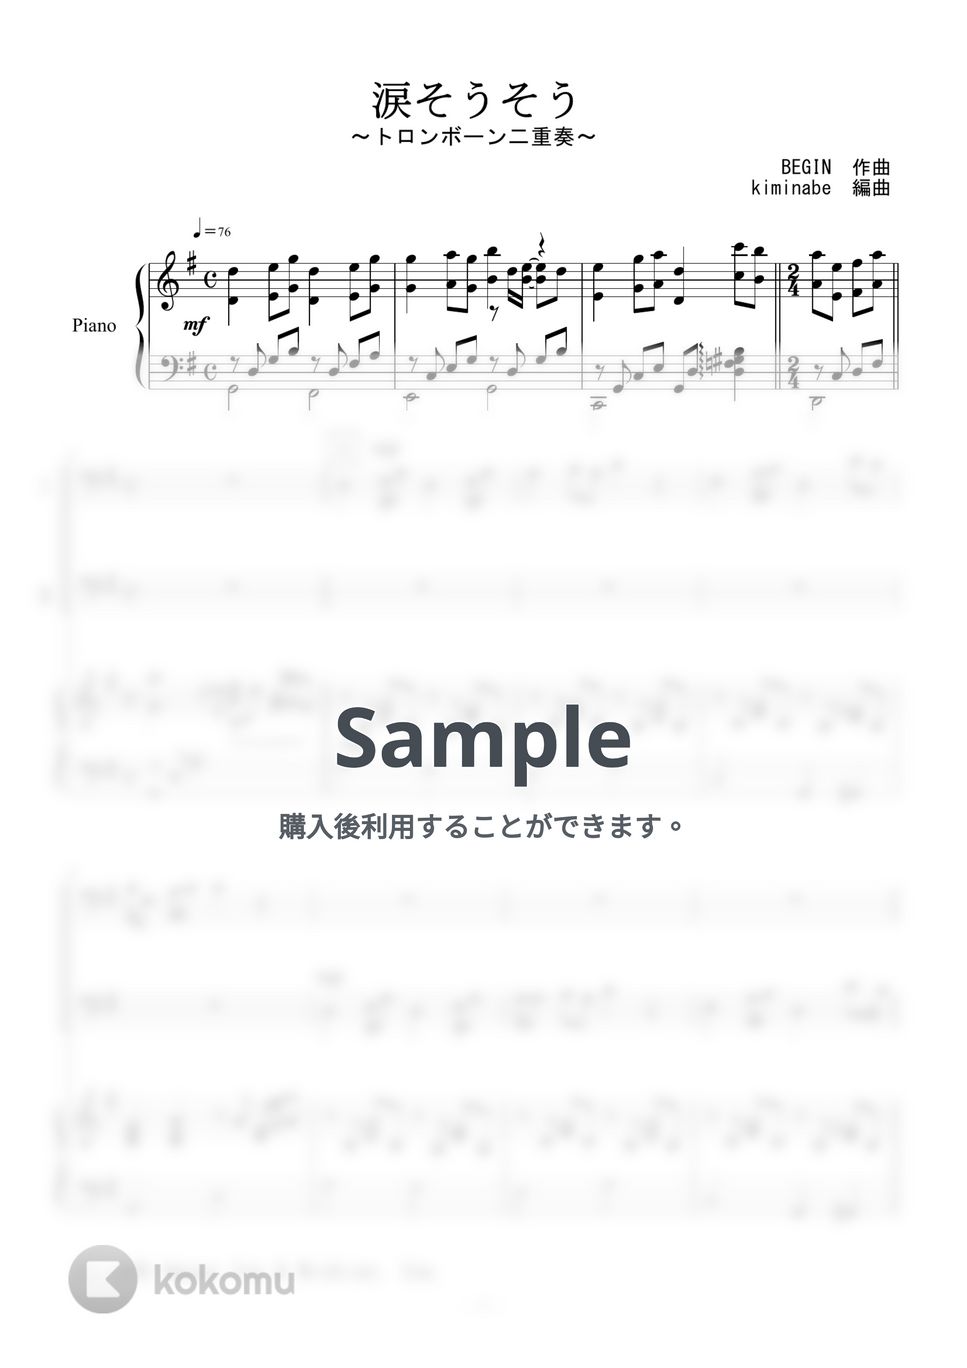 森山良子 - 涙そうそう (トロンボーン二重奏) by kiminabe